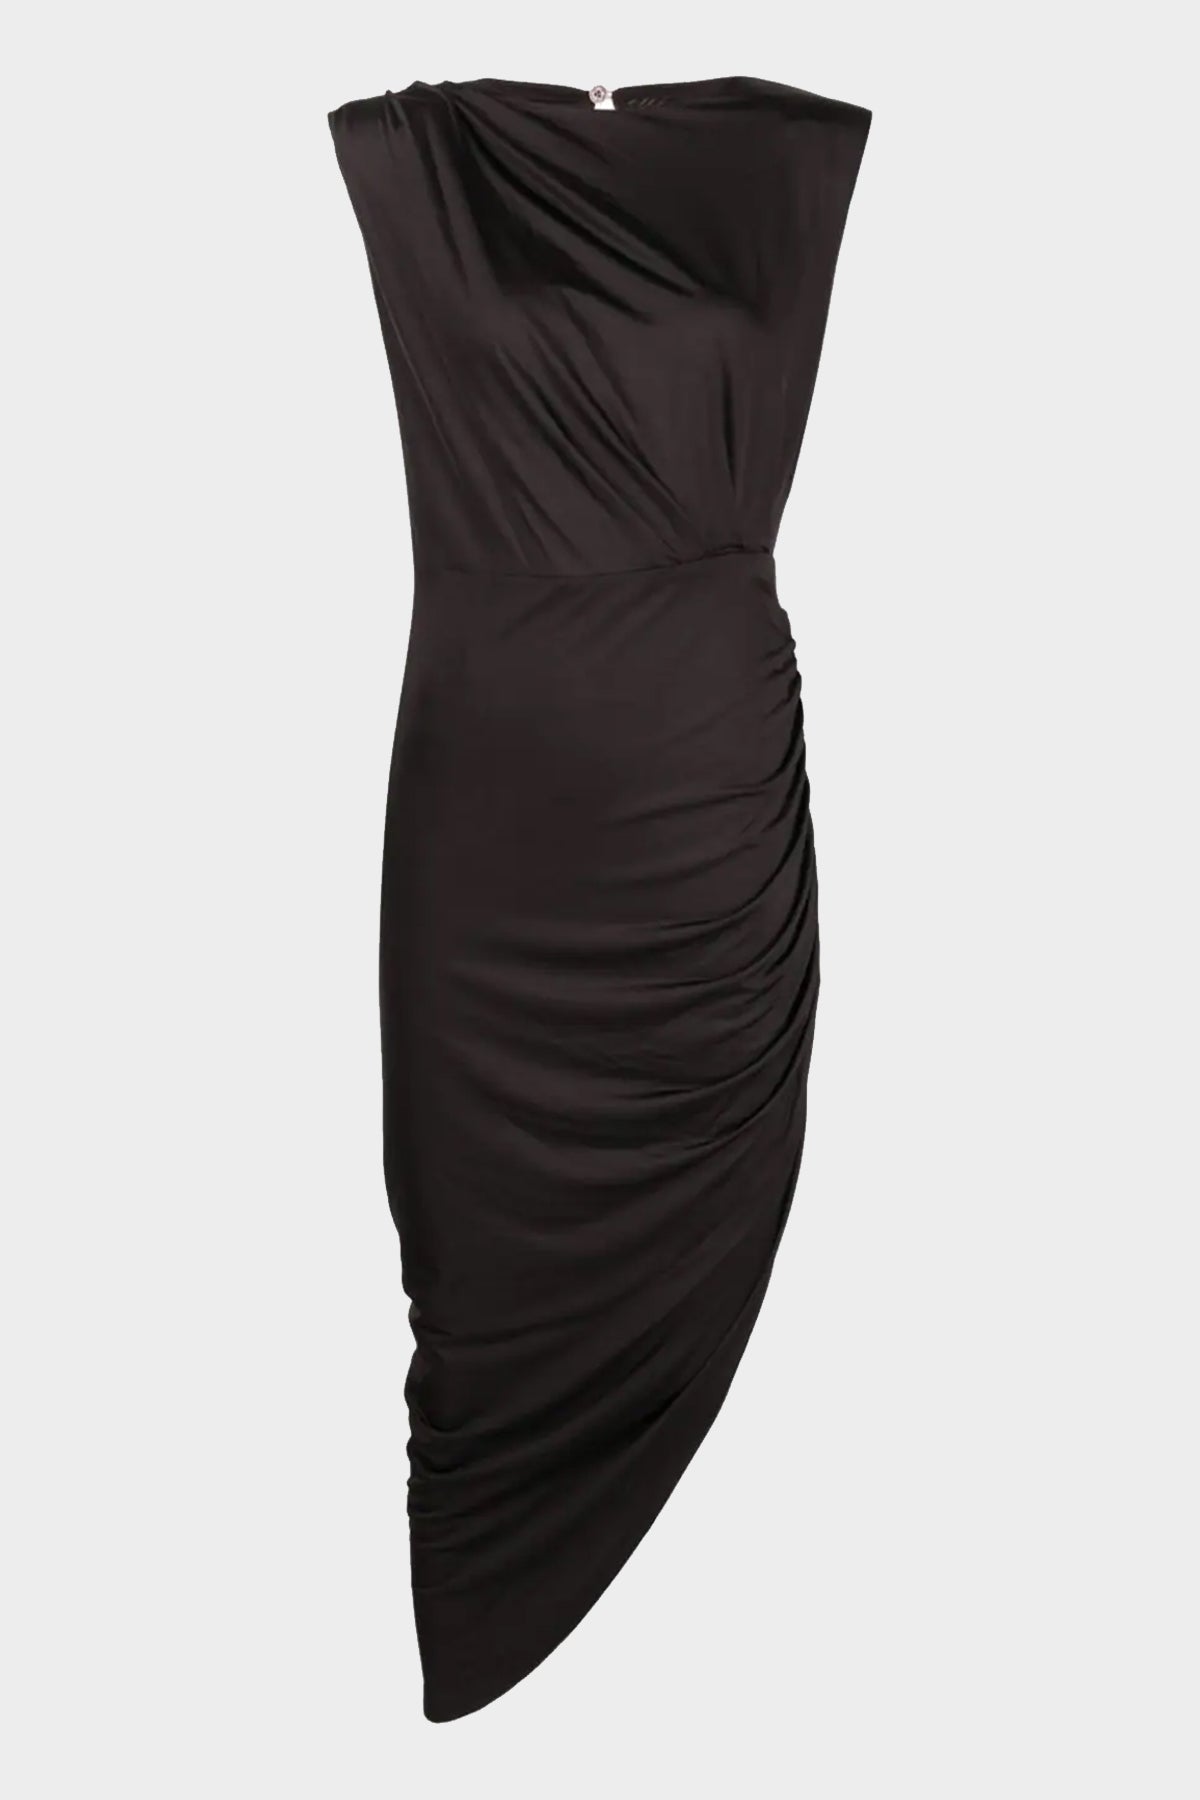 Merrith Dress in Black - shop-olivia.com